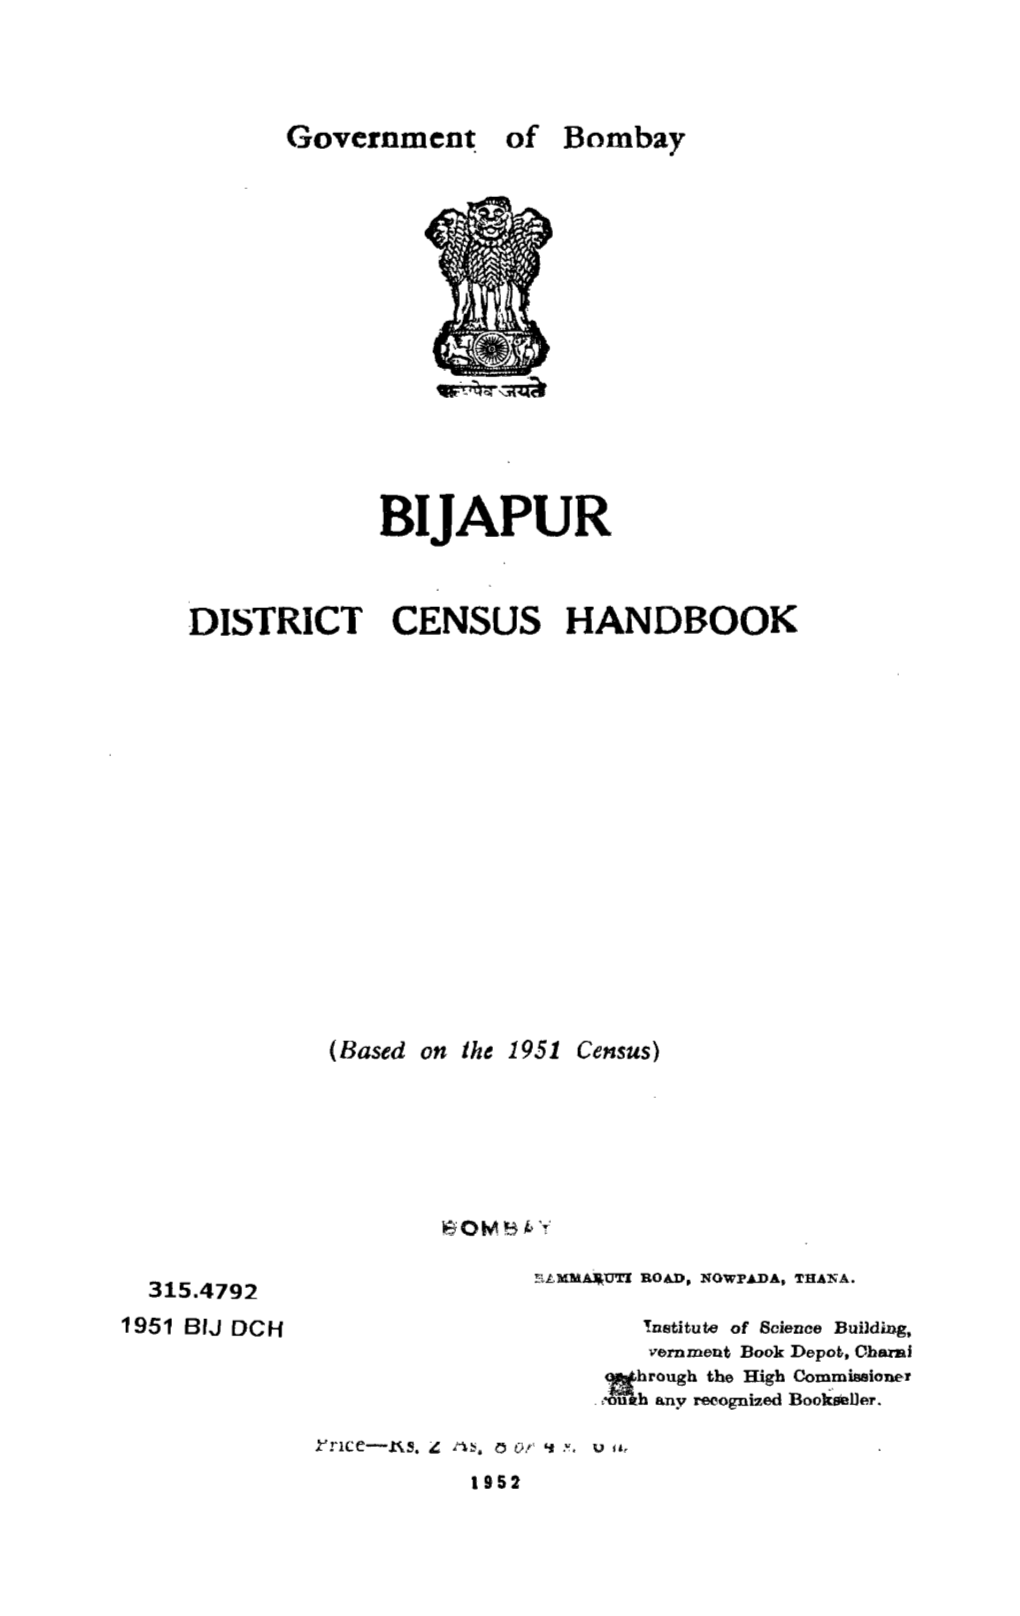 District Census Handbook, Bijapur